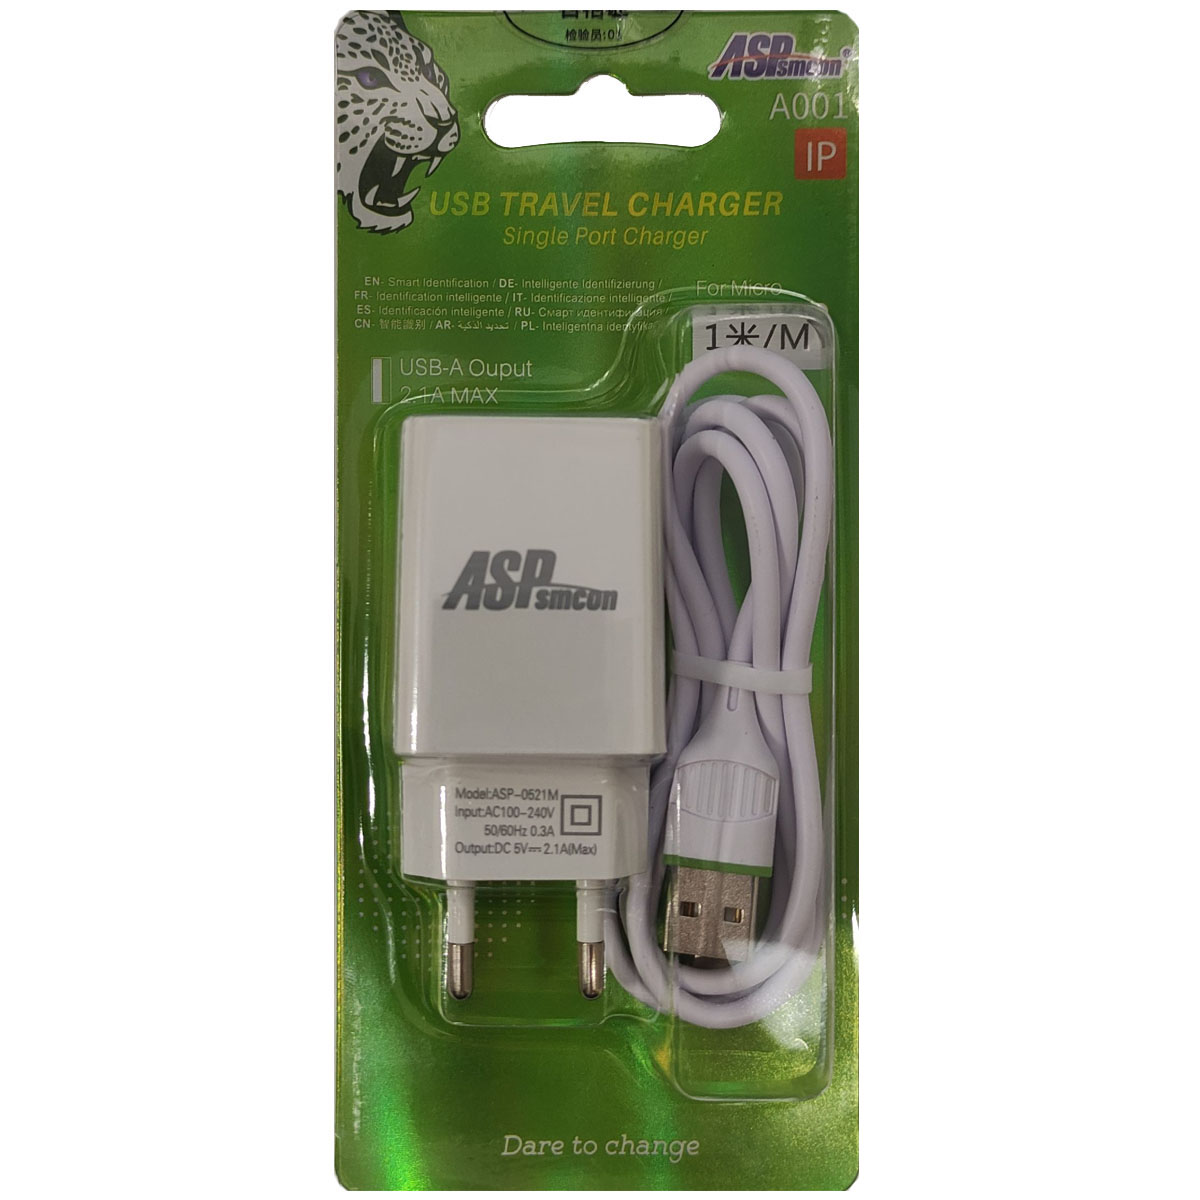 СЗУ (Сетевое зарядное устройство) ASPsmcon A001 с кабелем Lightning 8 pin, 2.1A, 1 USB, длина 1 метр, цвет белый